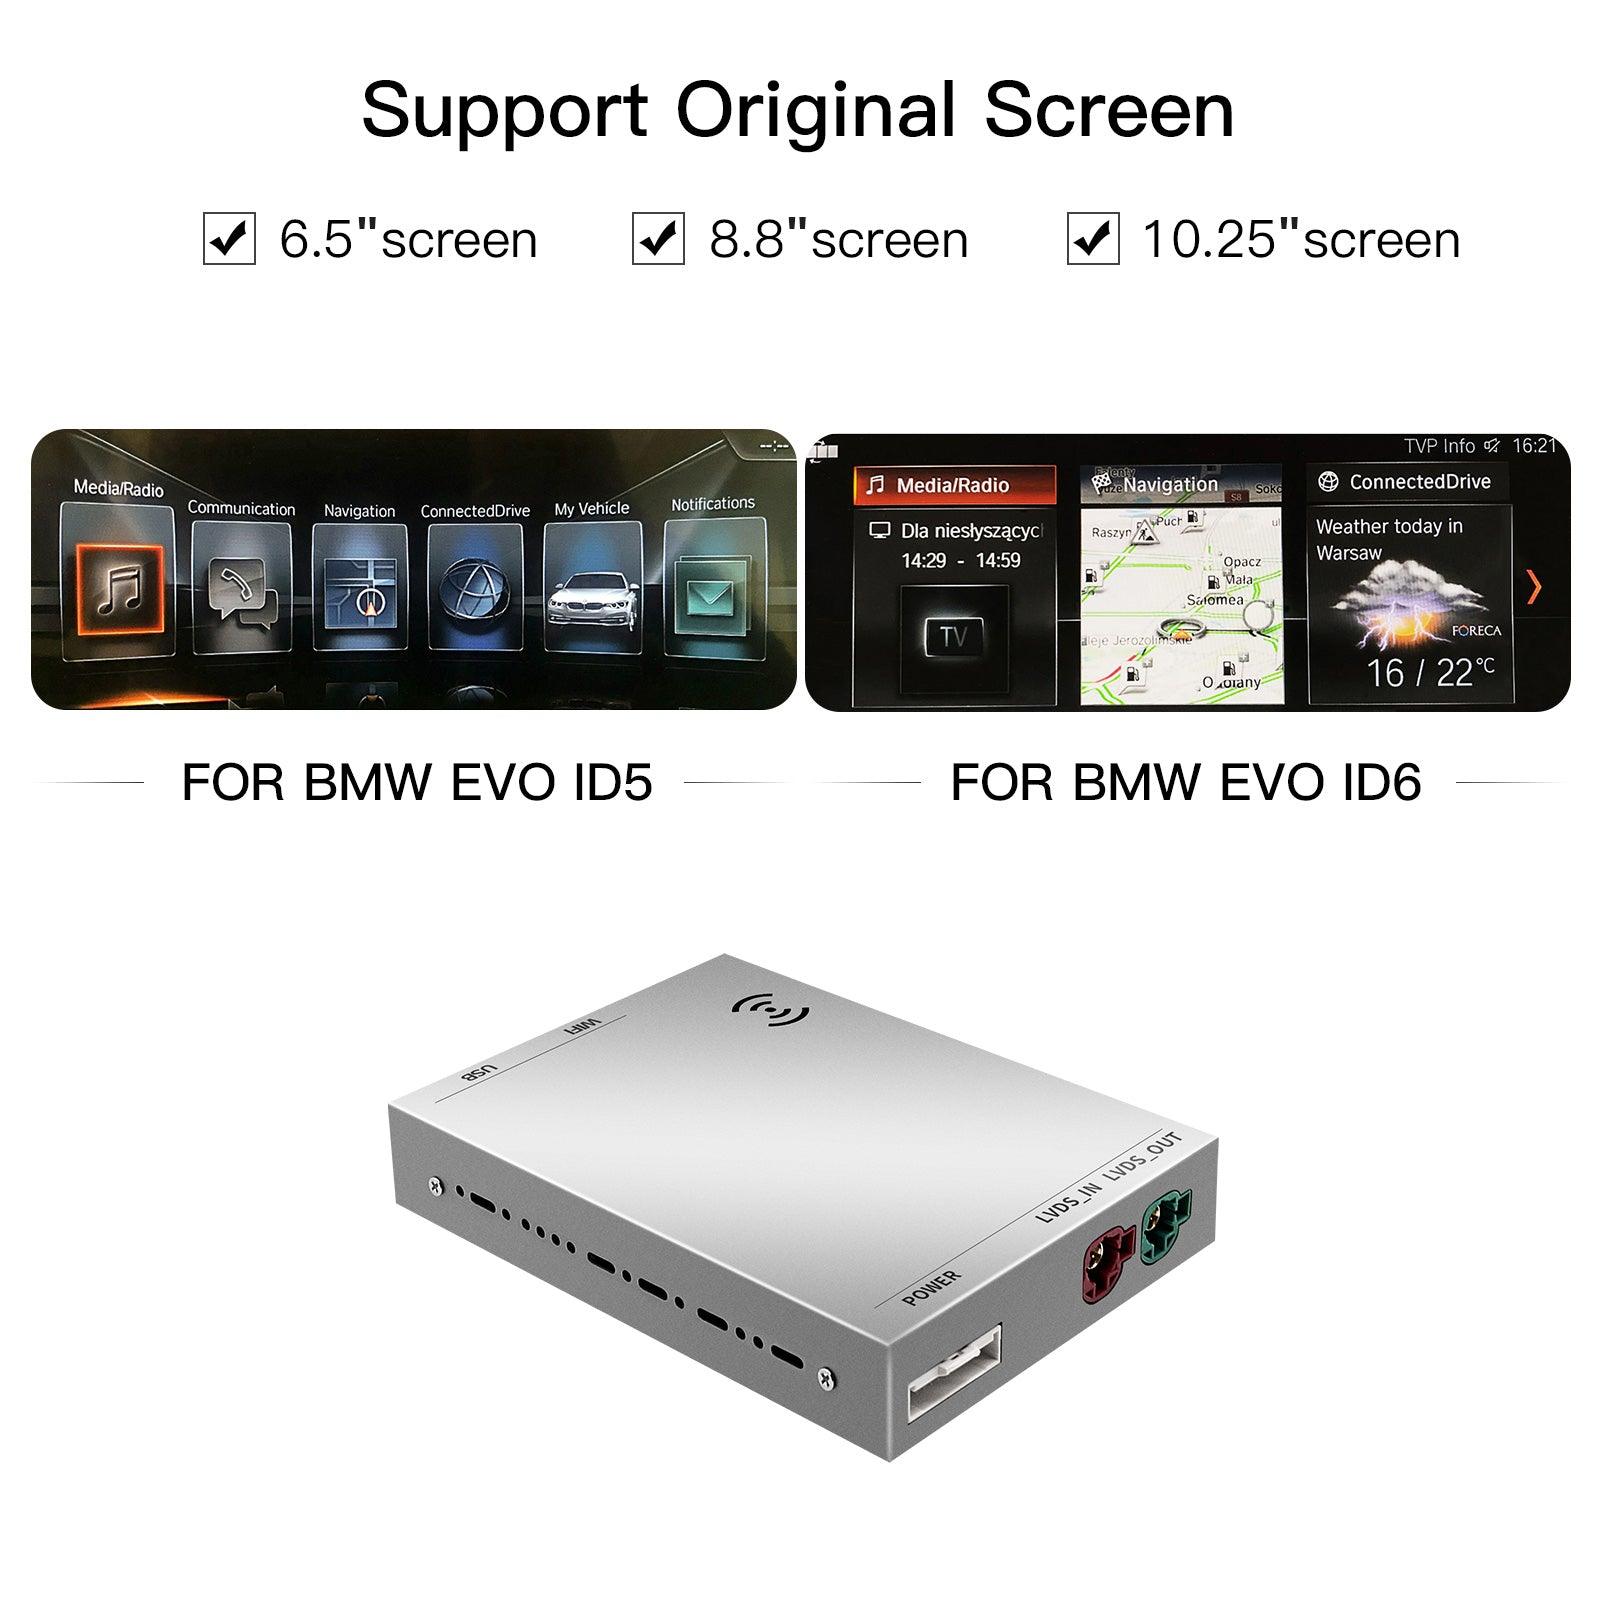 Wireless CarPlay For BMW Car NBT EVO System 1 2 3 4 5 7 Series X1